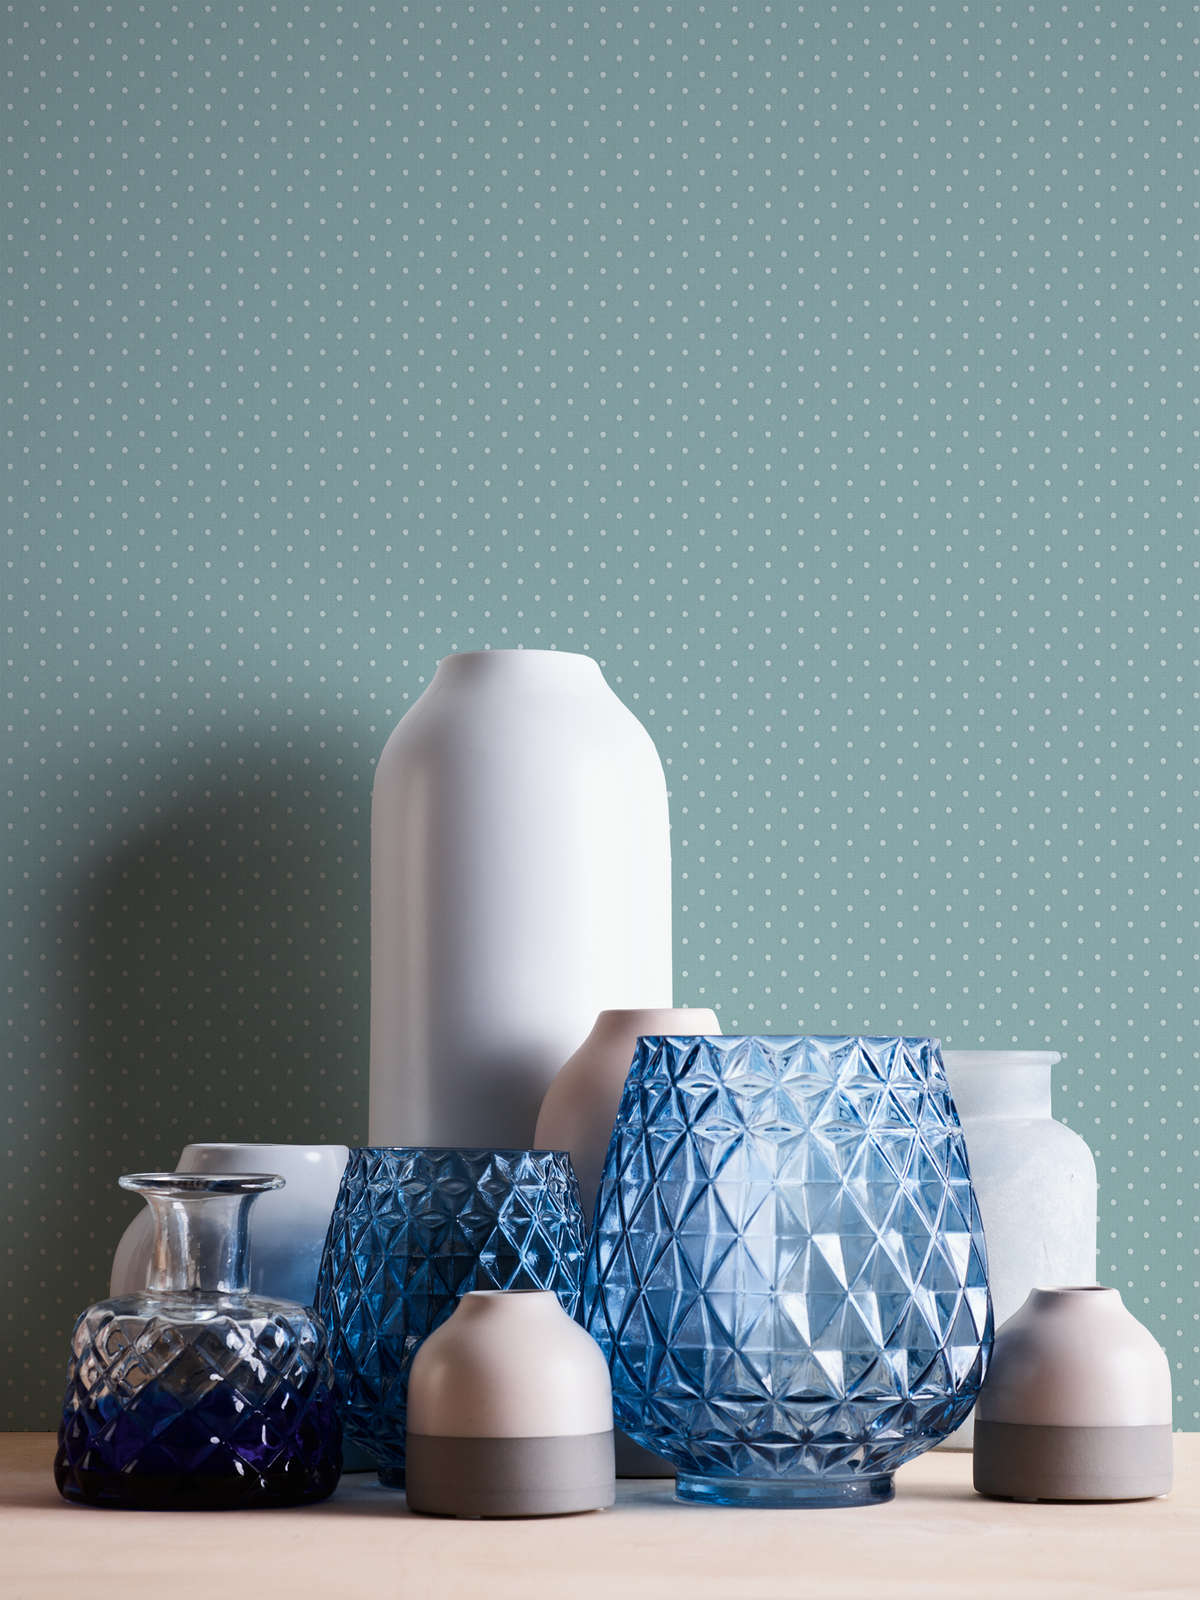             Papel pintado de tejido no tejido con diseño de puntos pequeños - azul, blanco
        